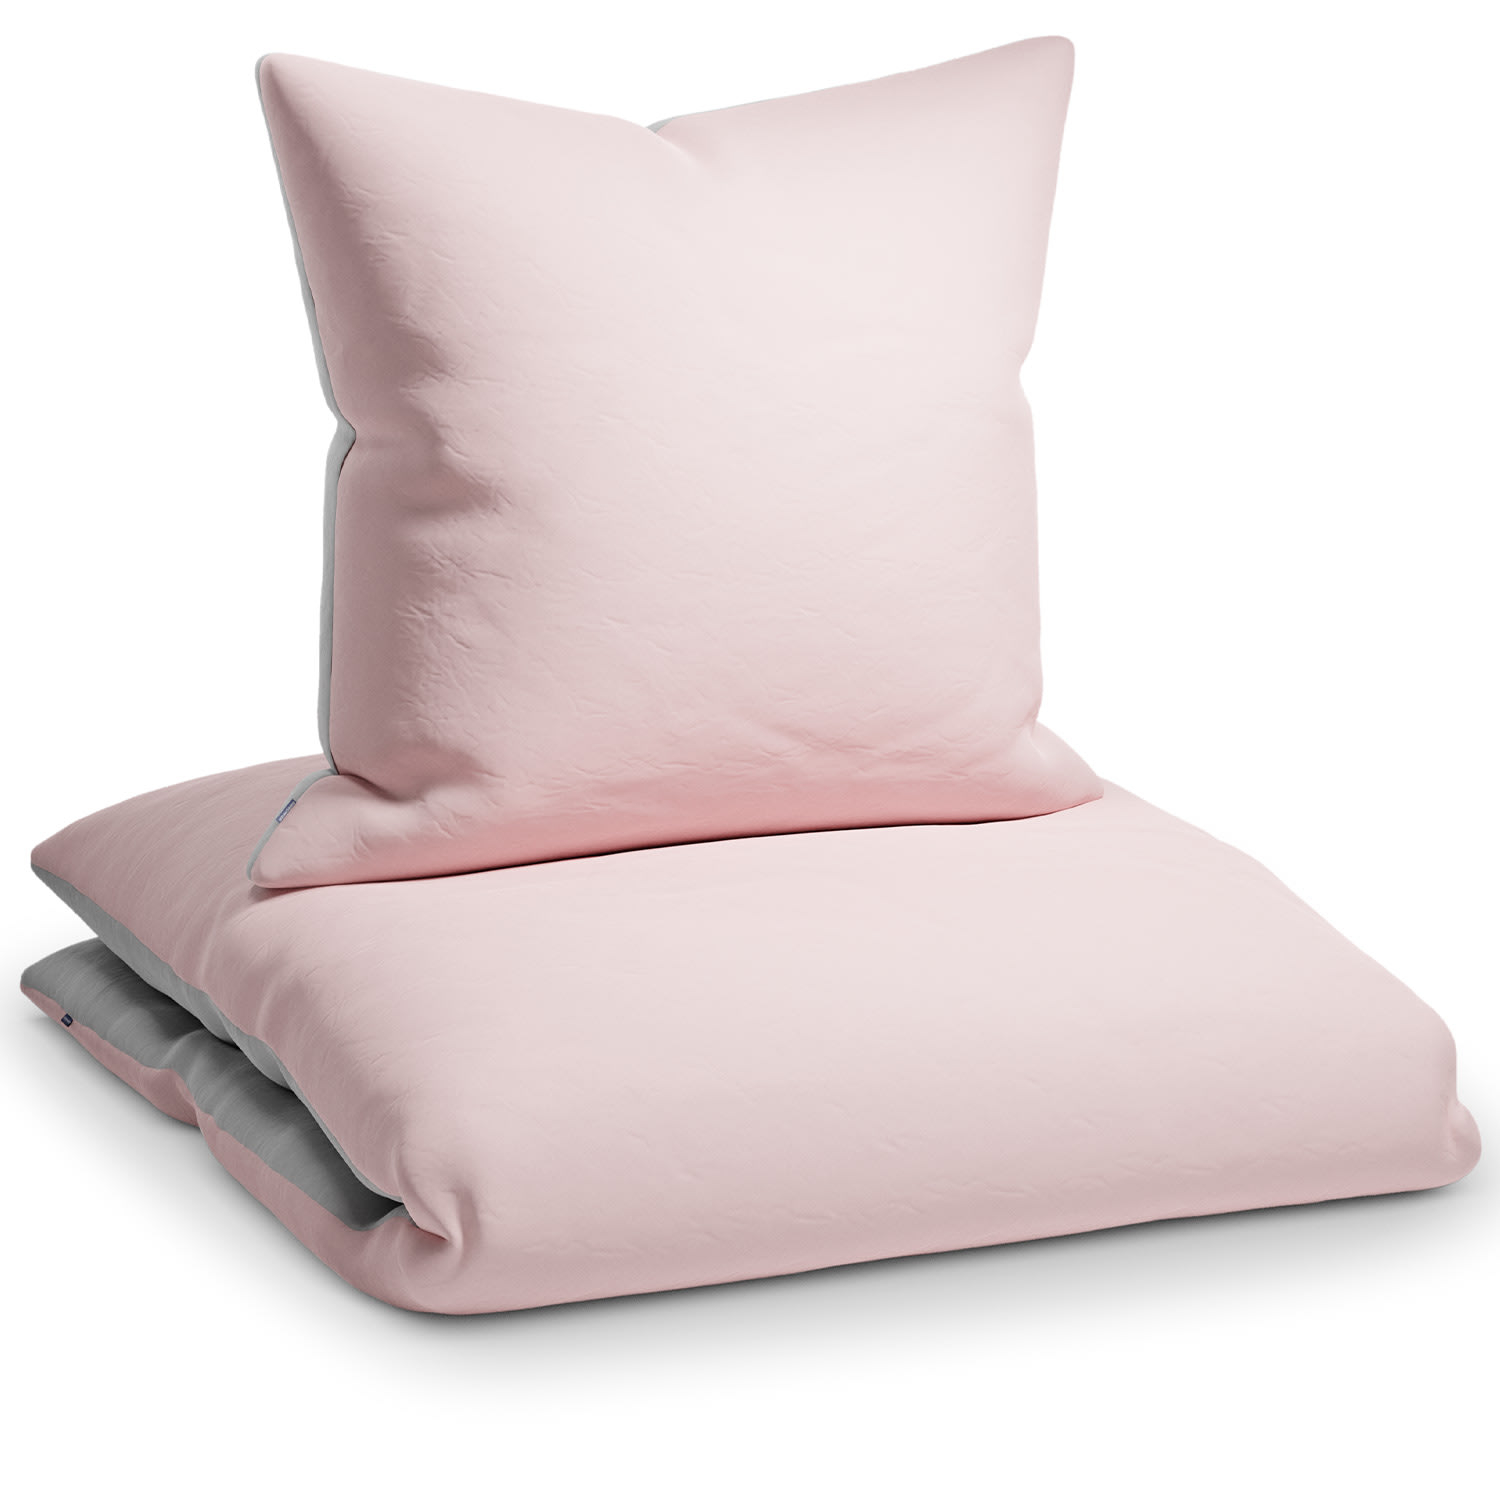 Sleepwise Soft Wonder-Edition, pościel, 135 x 200 cm, jasnoszara/różowa